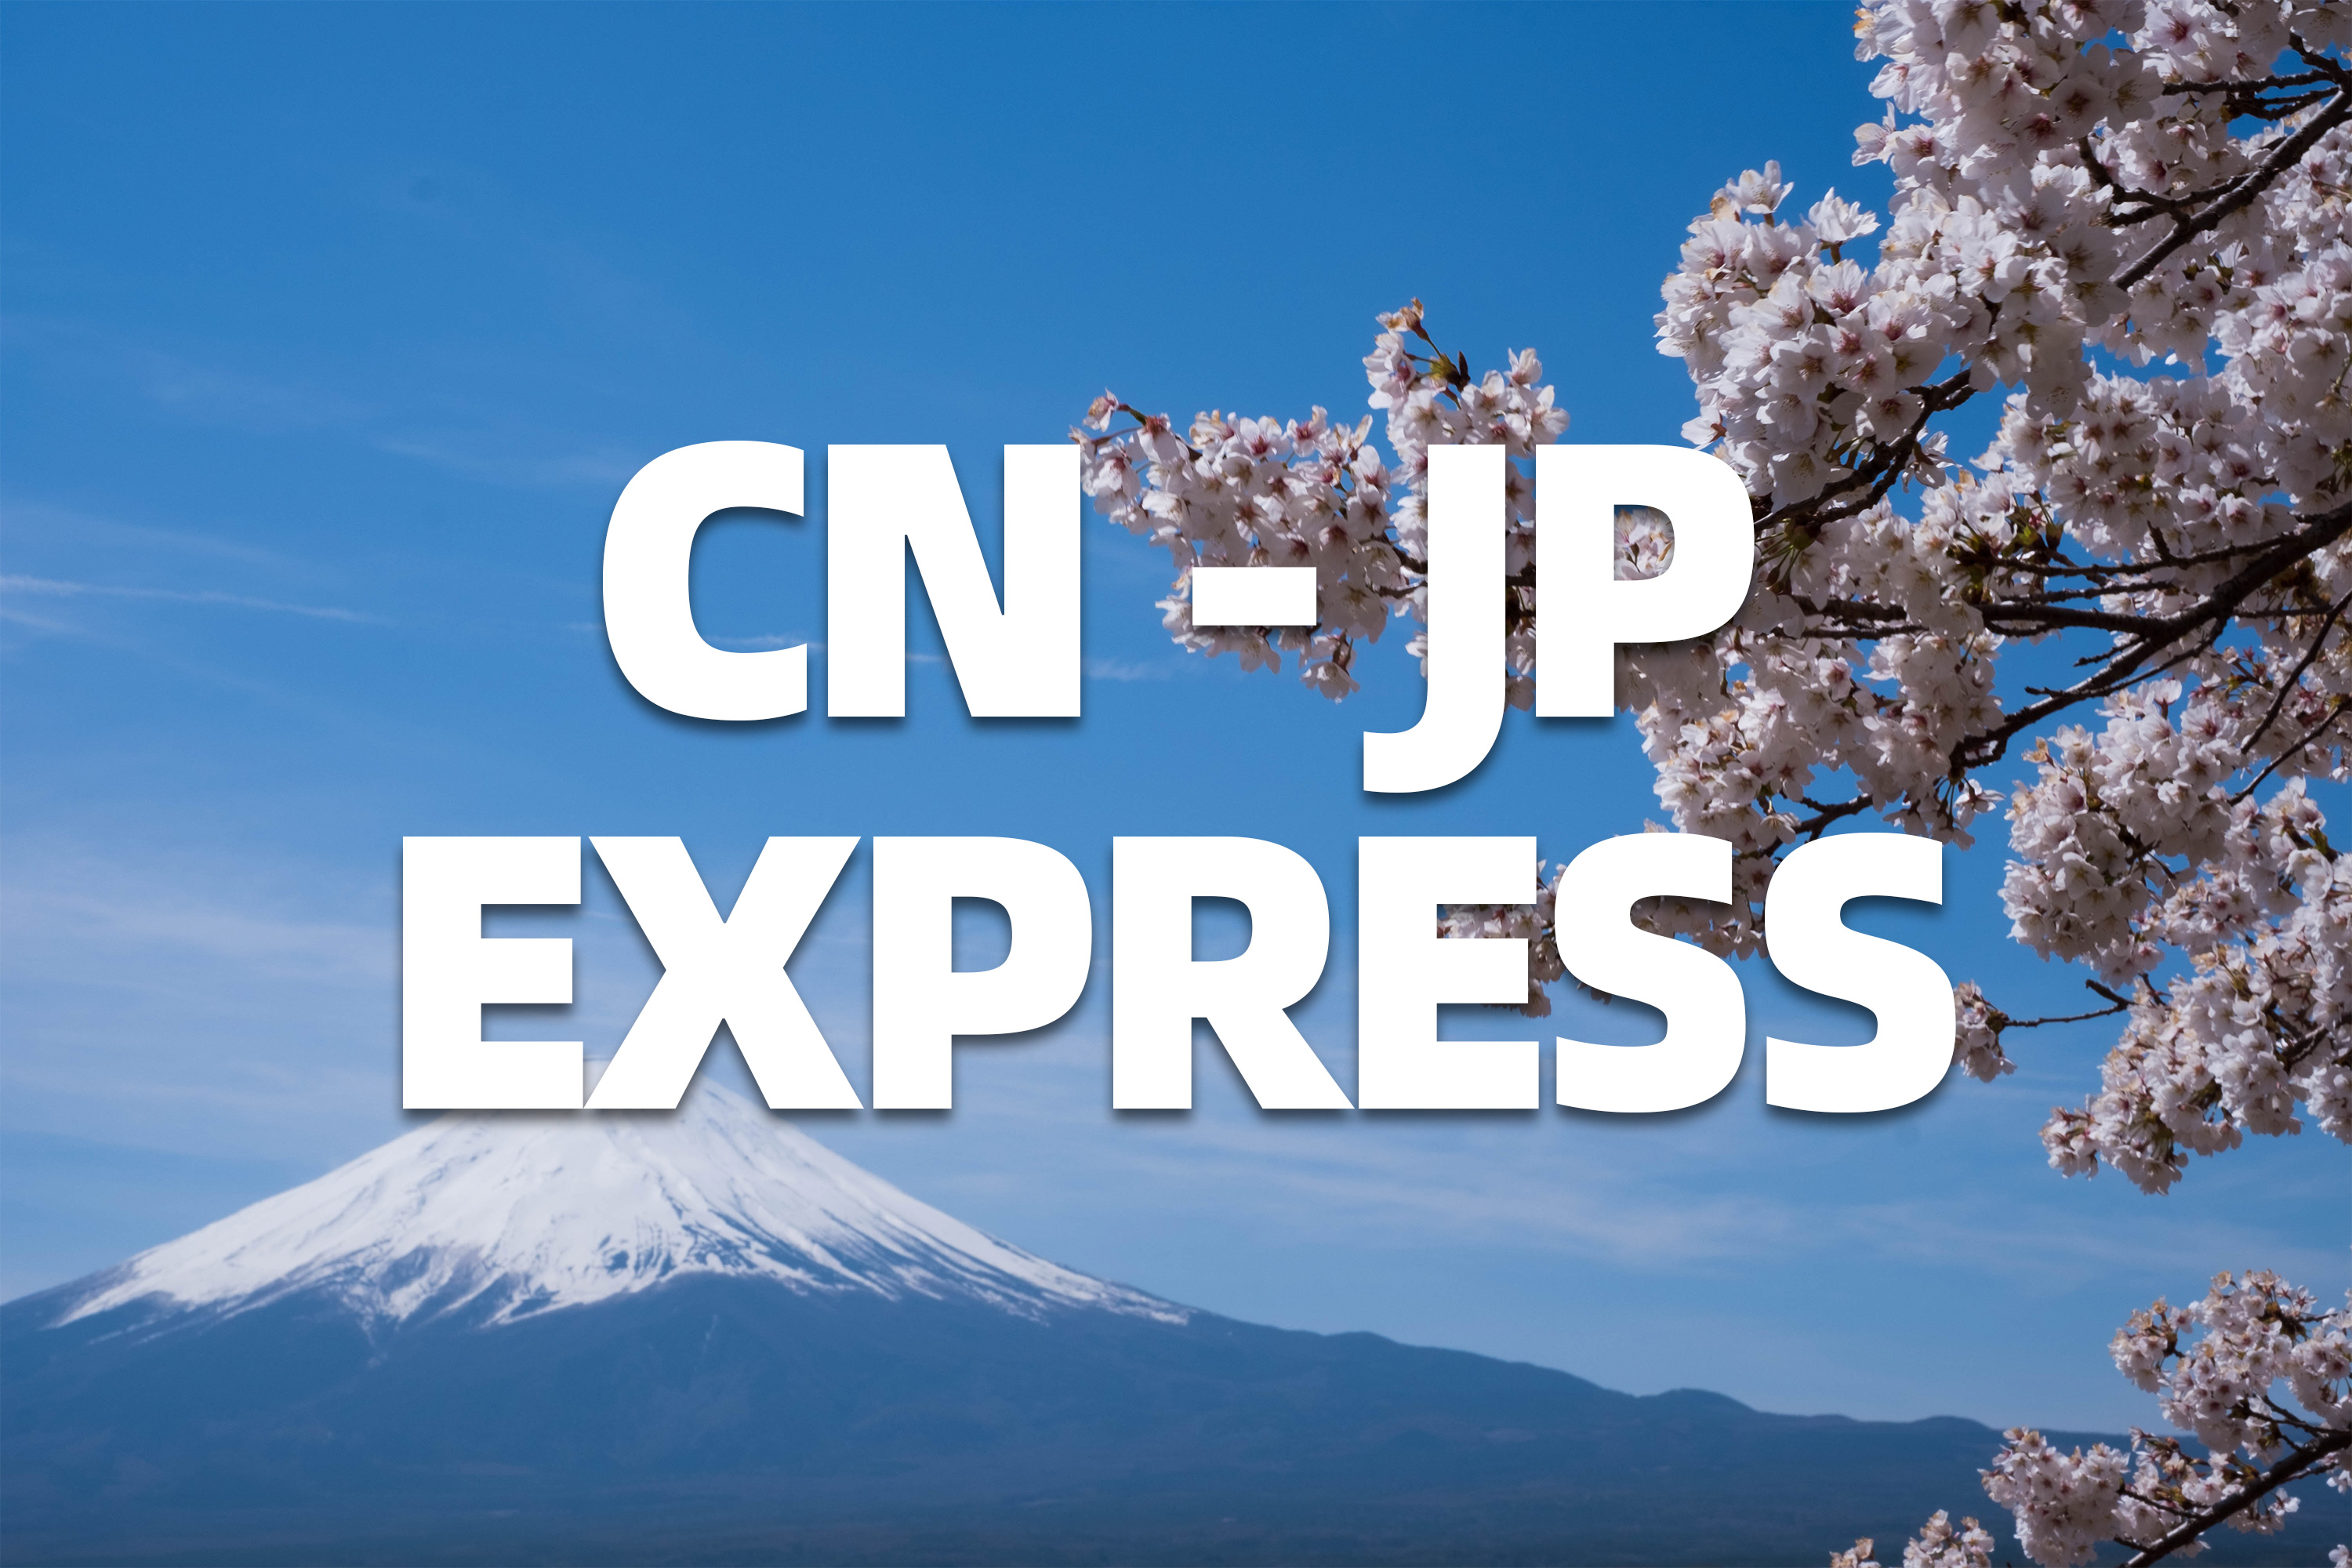 China-Japan express